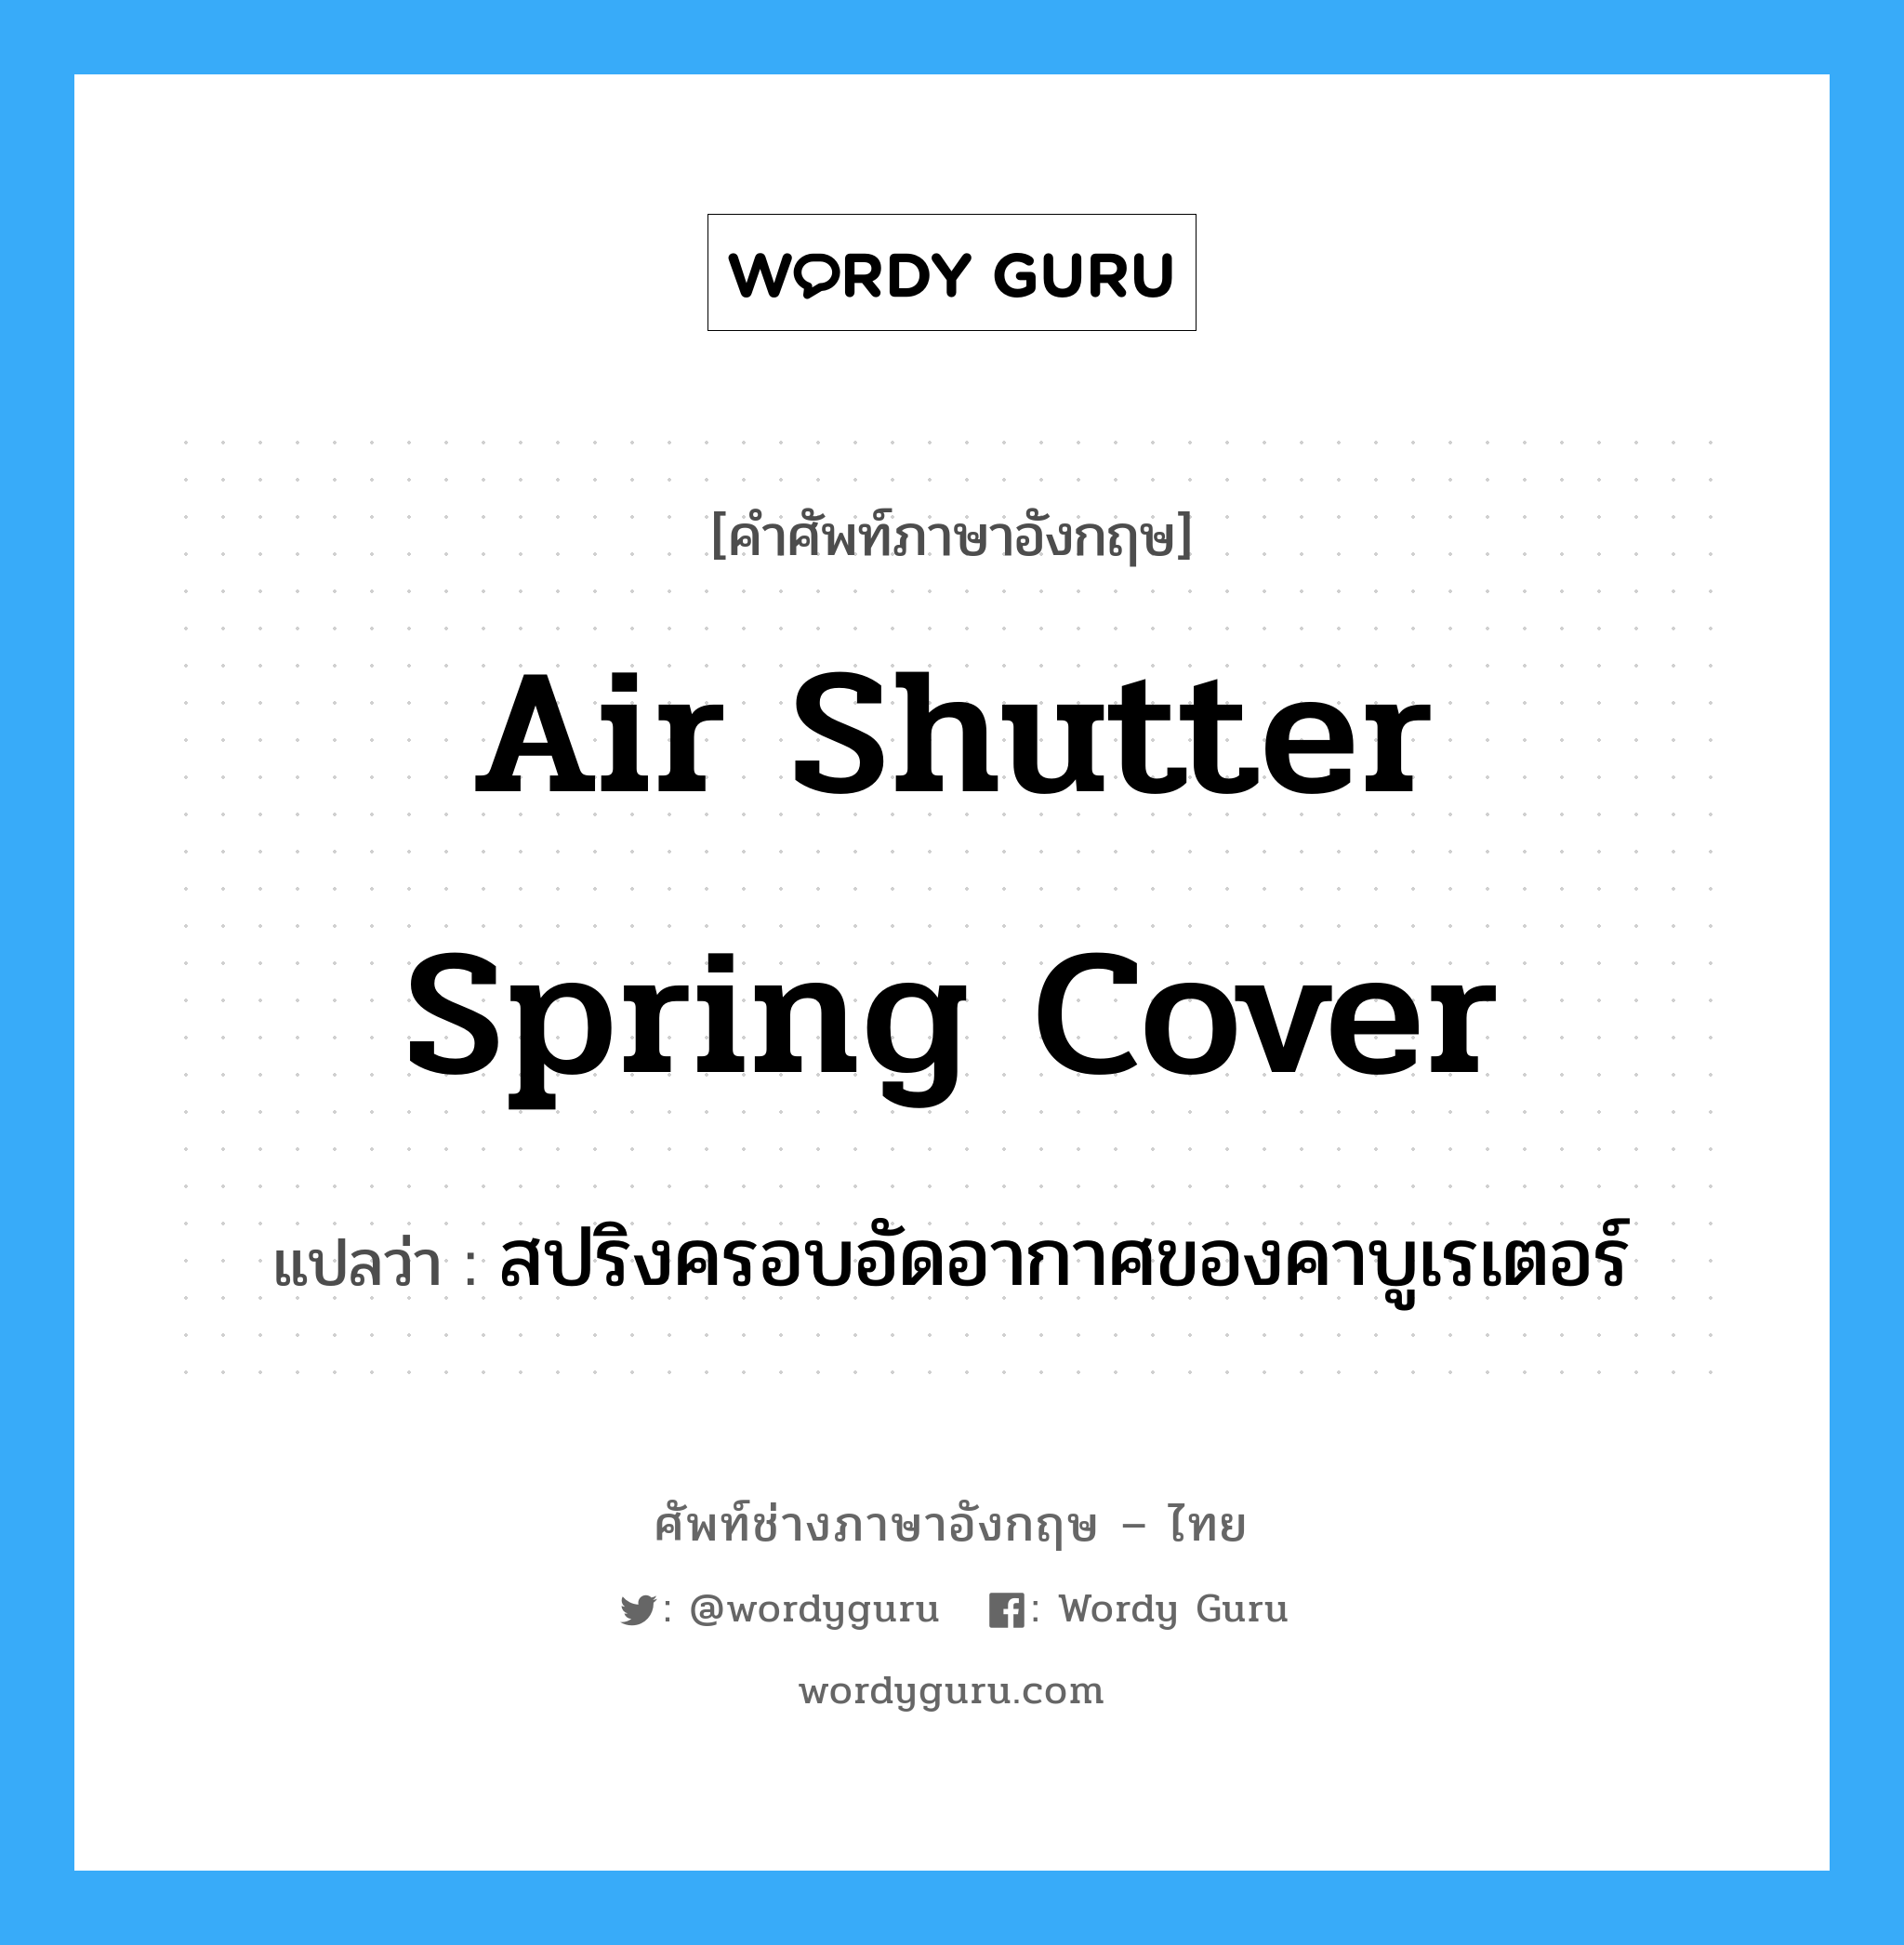 air shutter spring cover แปลว่า?, คำศัพท์ช่างภาษาอังกฤษ - ไทย air shutter spring cover คำศัพท์ภาษาอังกฤษ air shutter spring cover แปลว่า สปริงครอบอัดอากาศของคาบูเรเตอร์